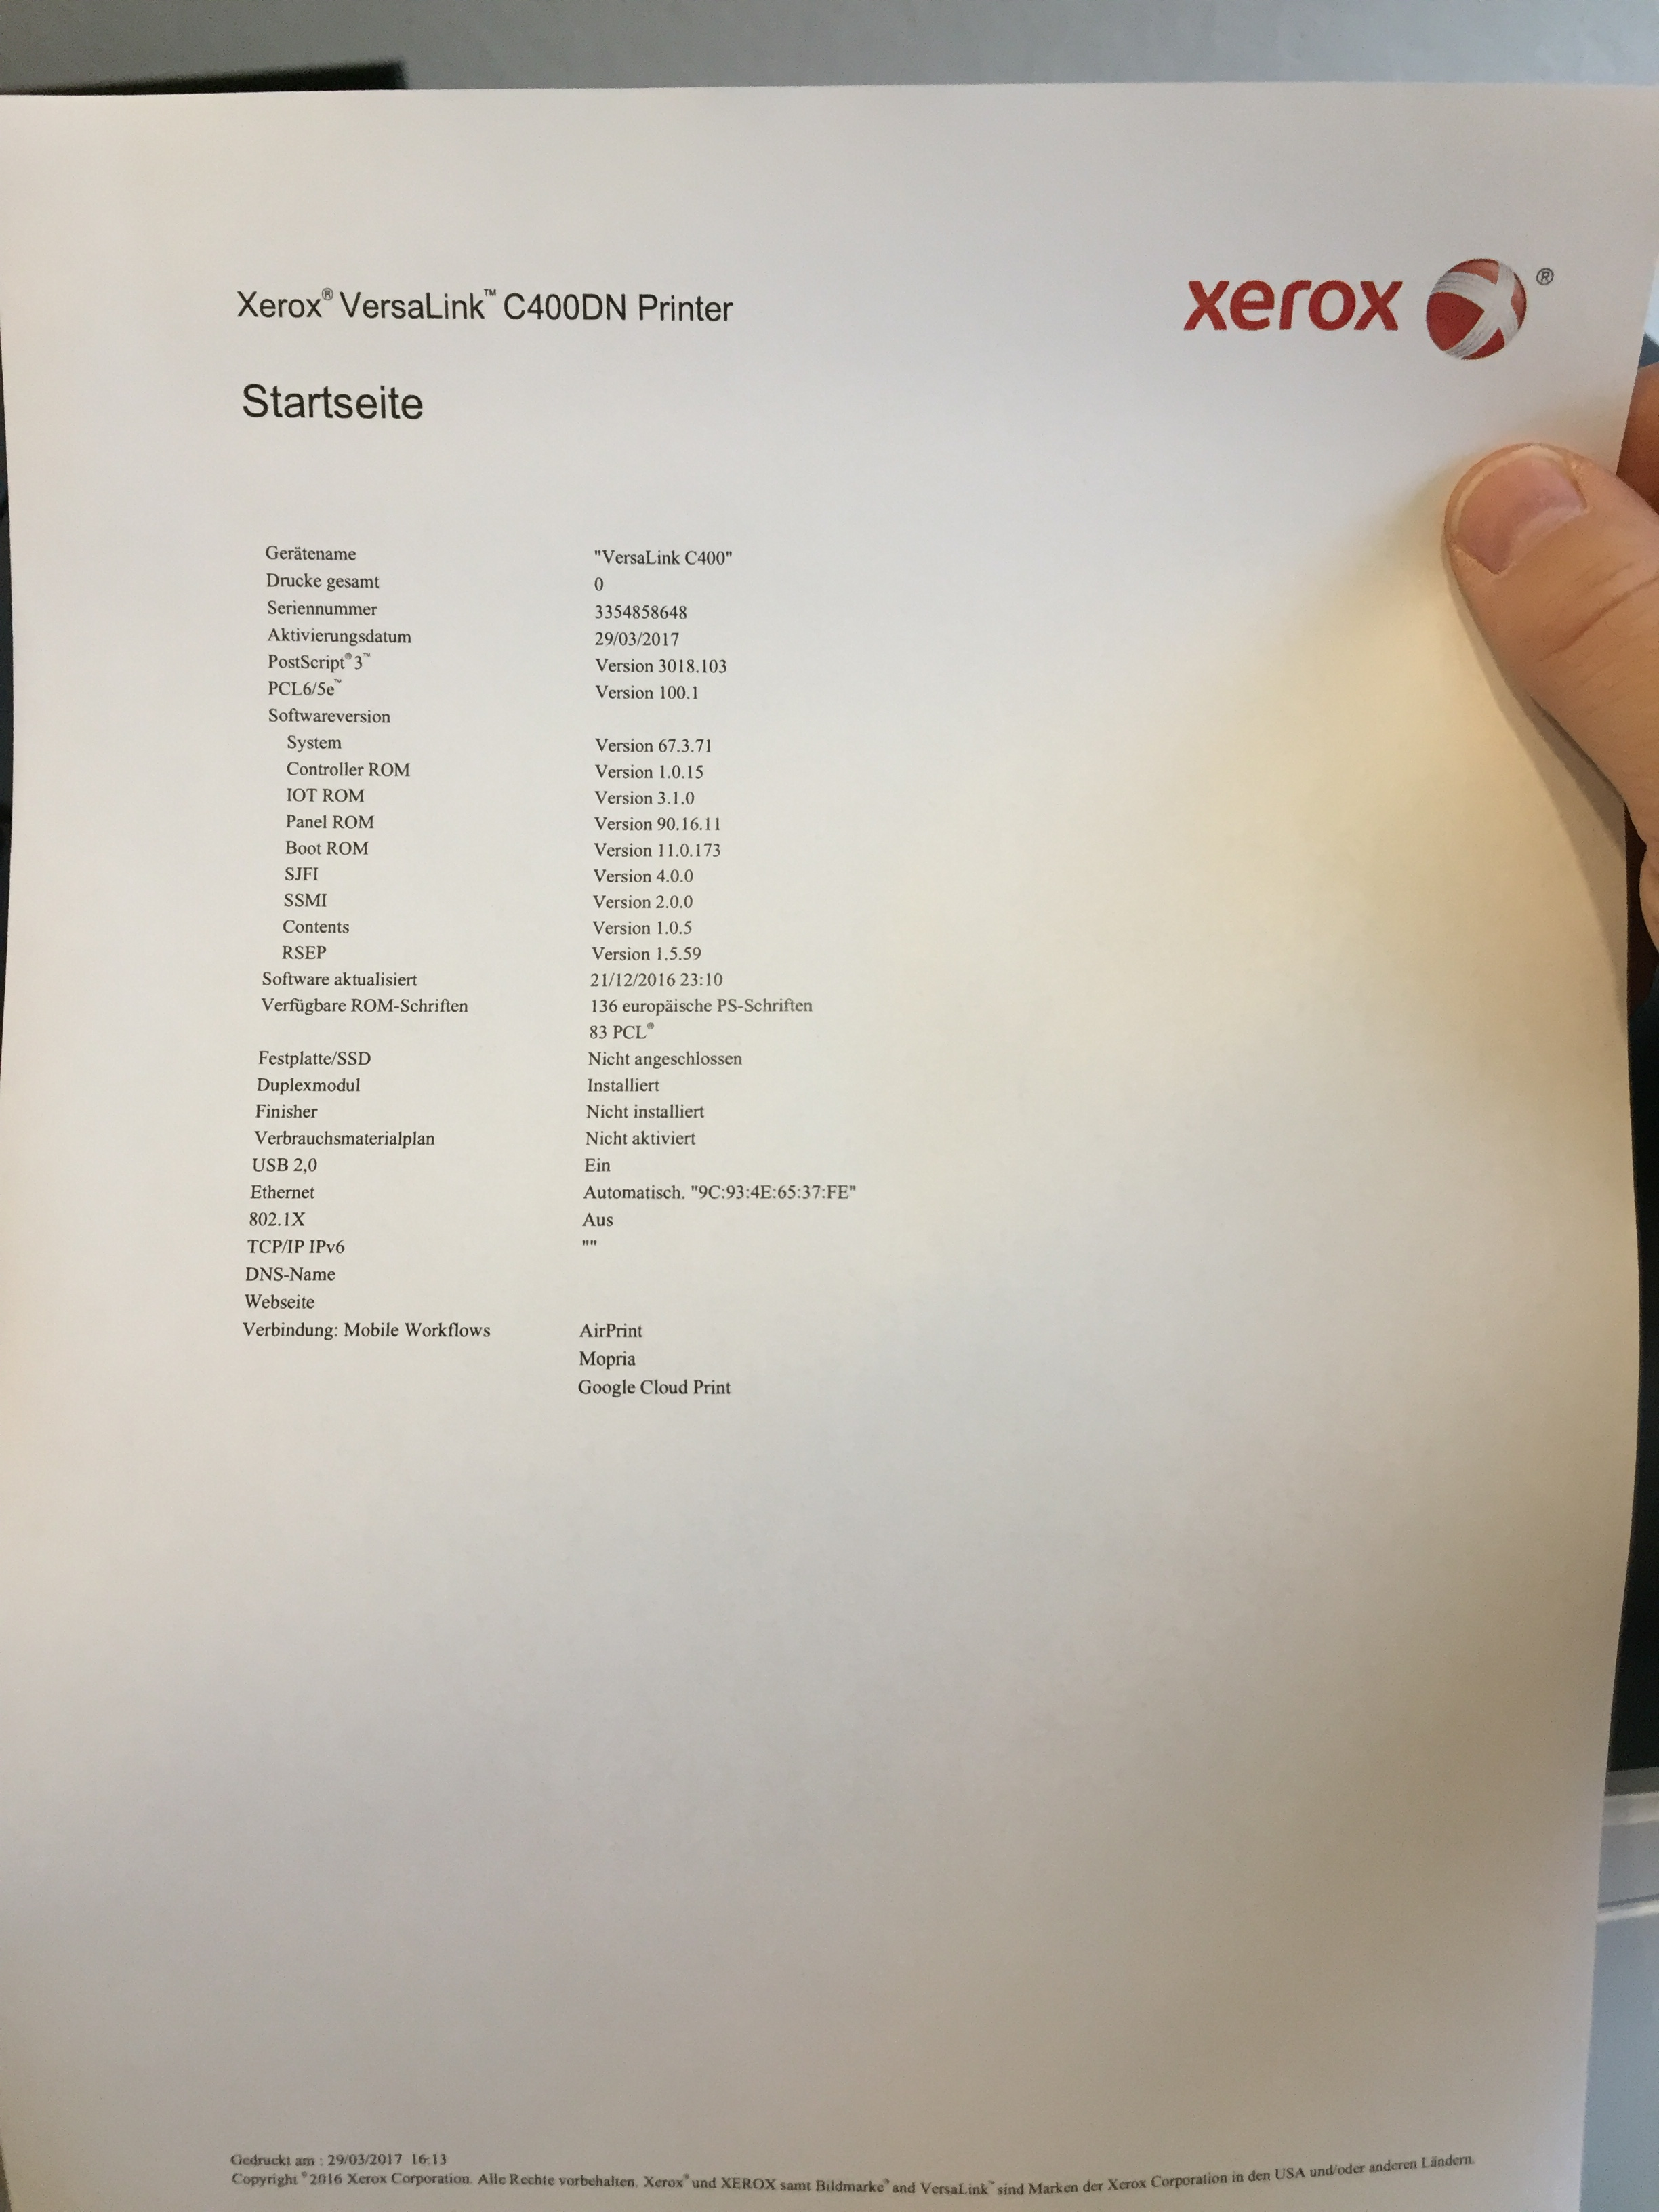 Xerox VersaLink C400DN - Startseite wird gedruckt